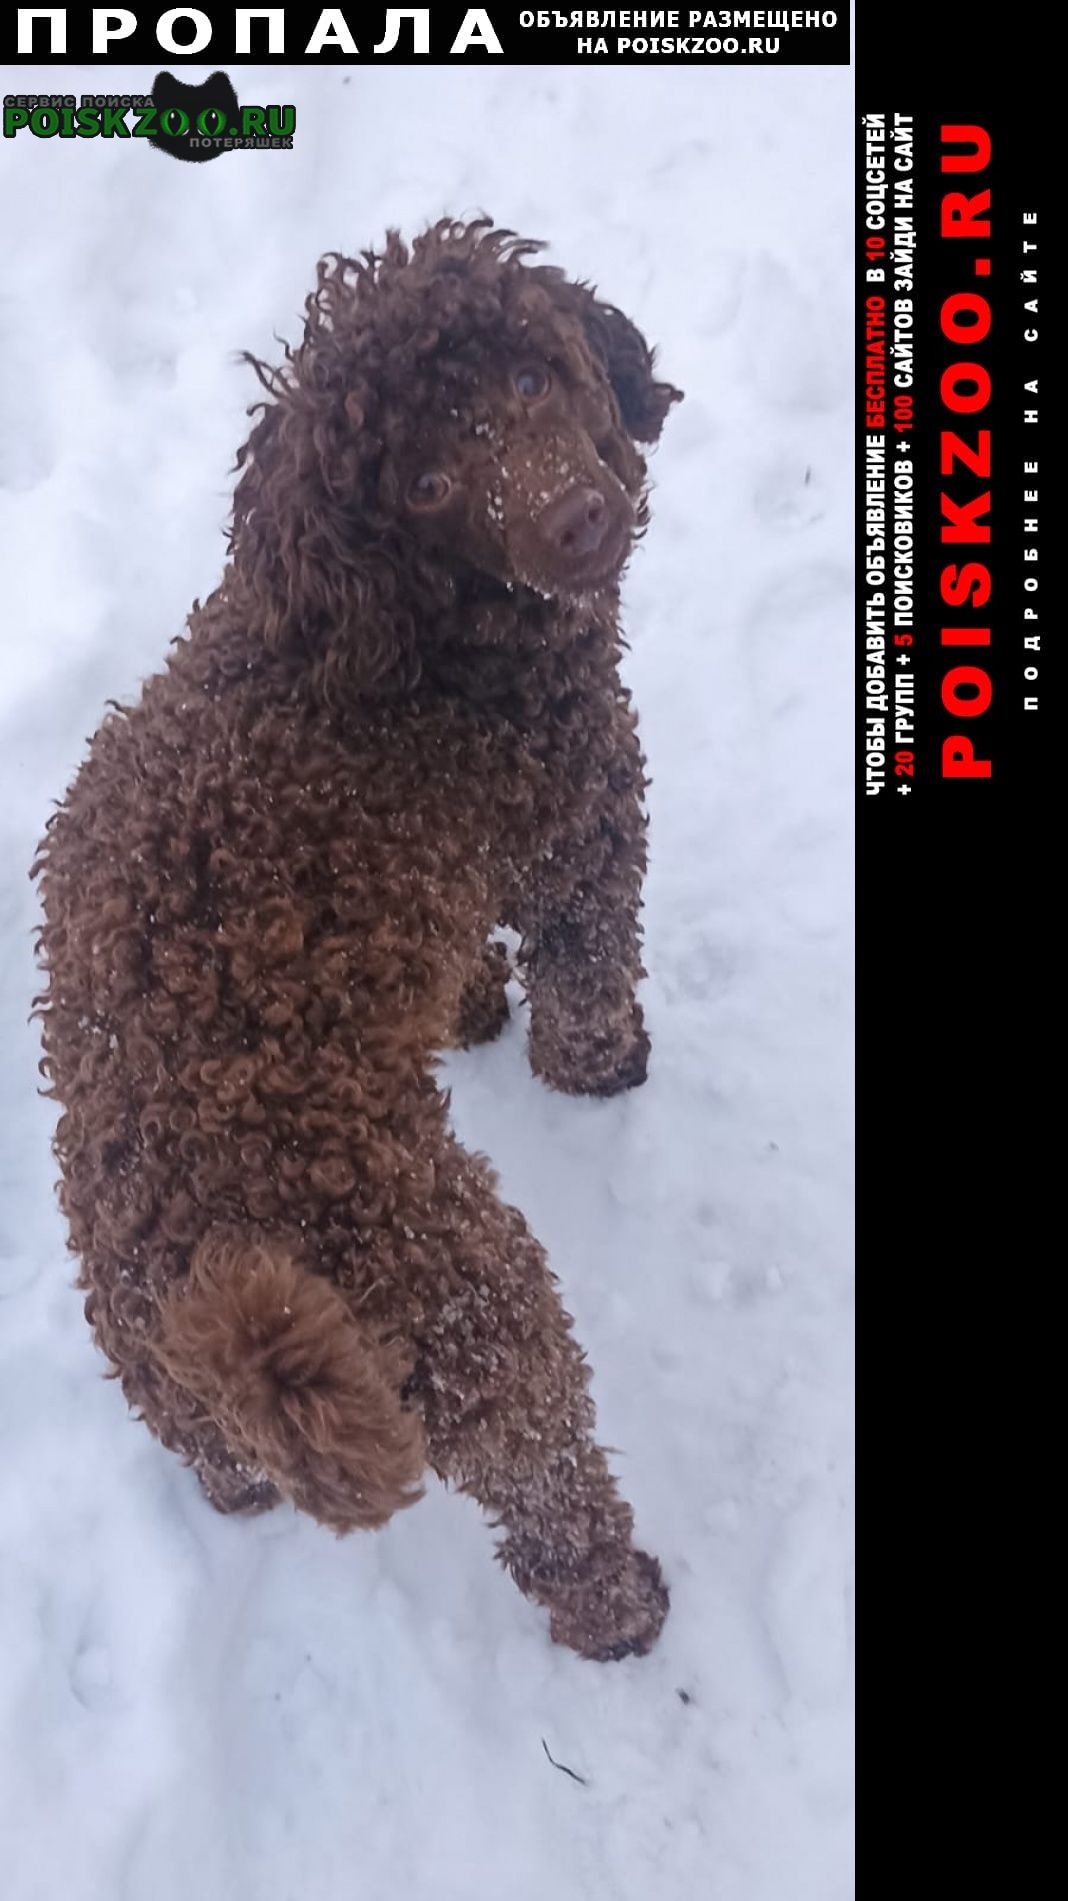 Санкт-Петербург Пропала собака кобель карликовый пудель